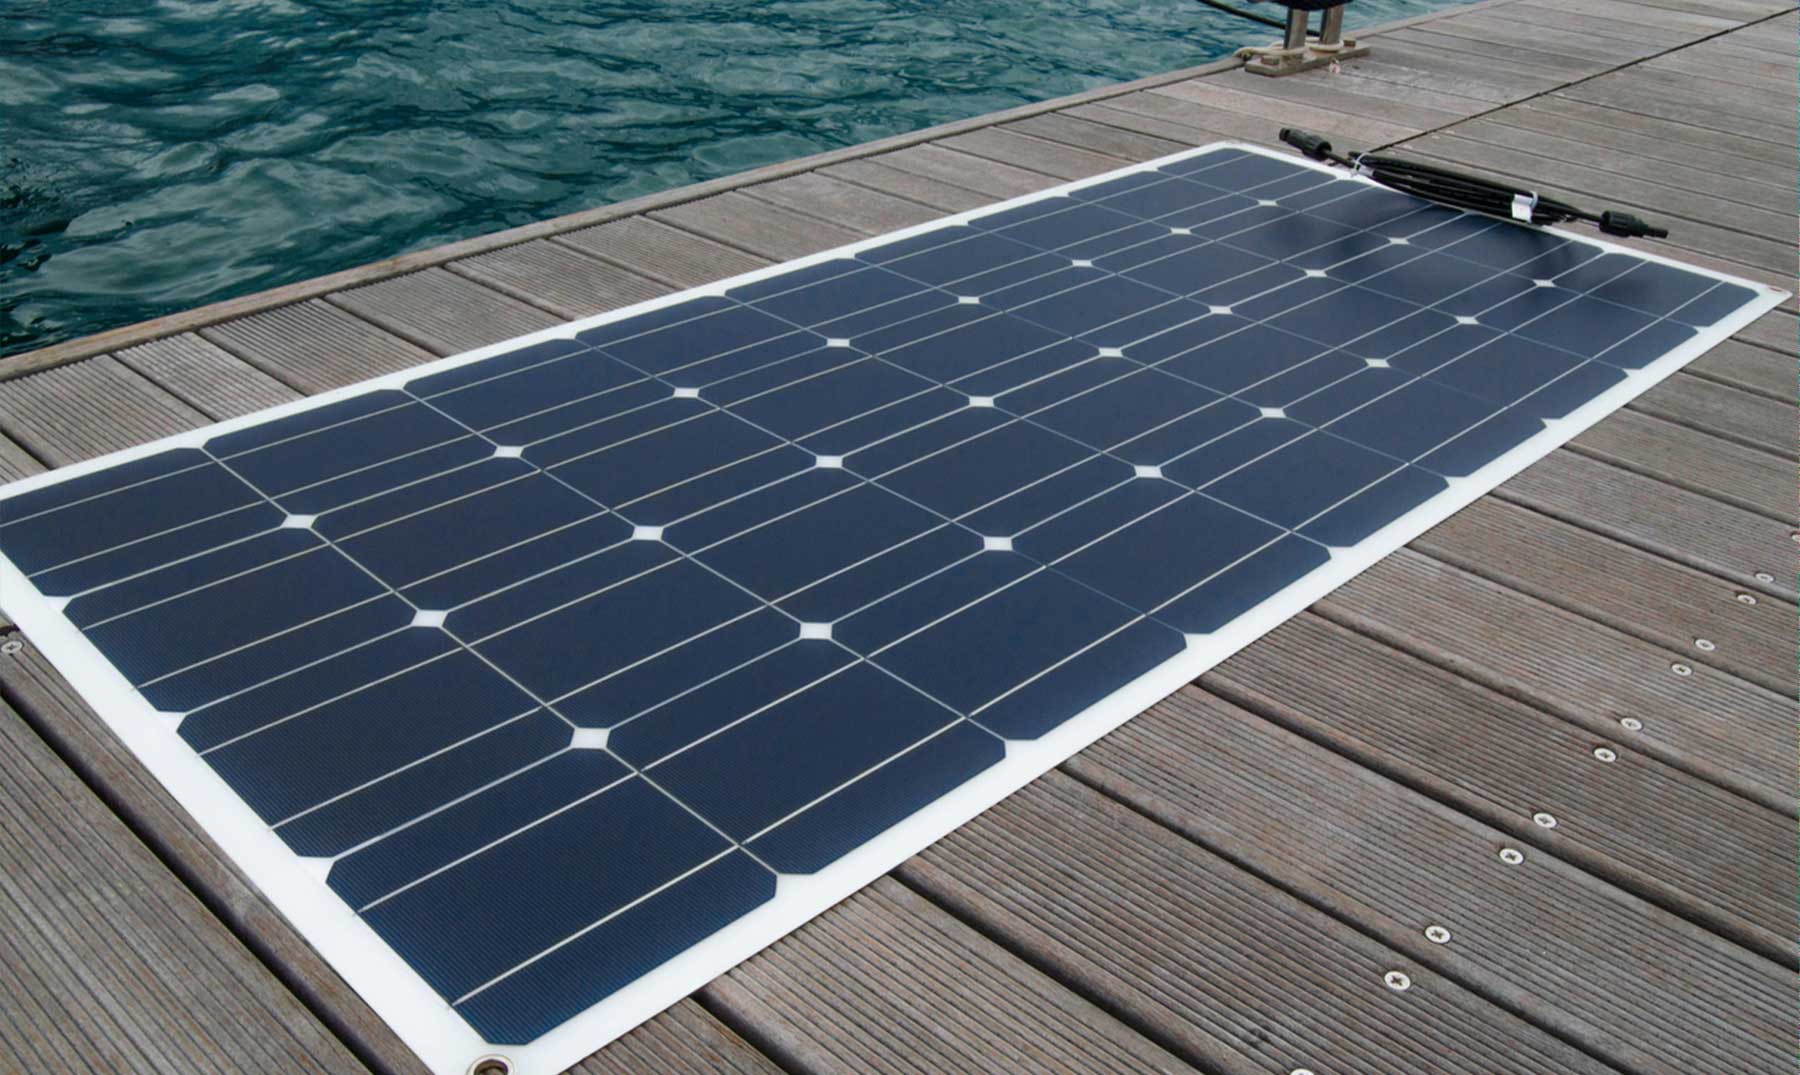 Paneles Solares Flexibles: Qué son, Ventajas y Precios